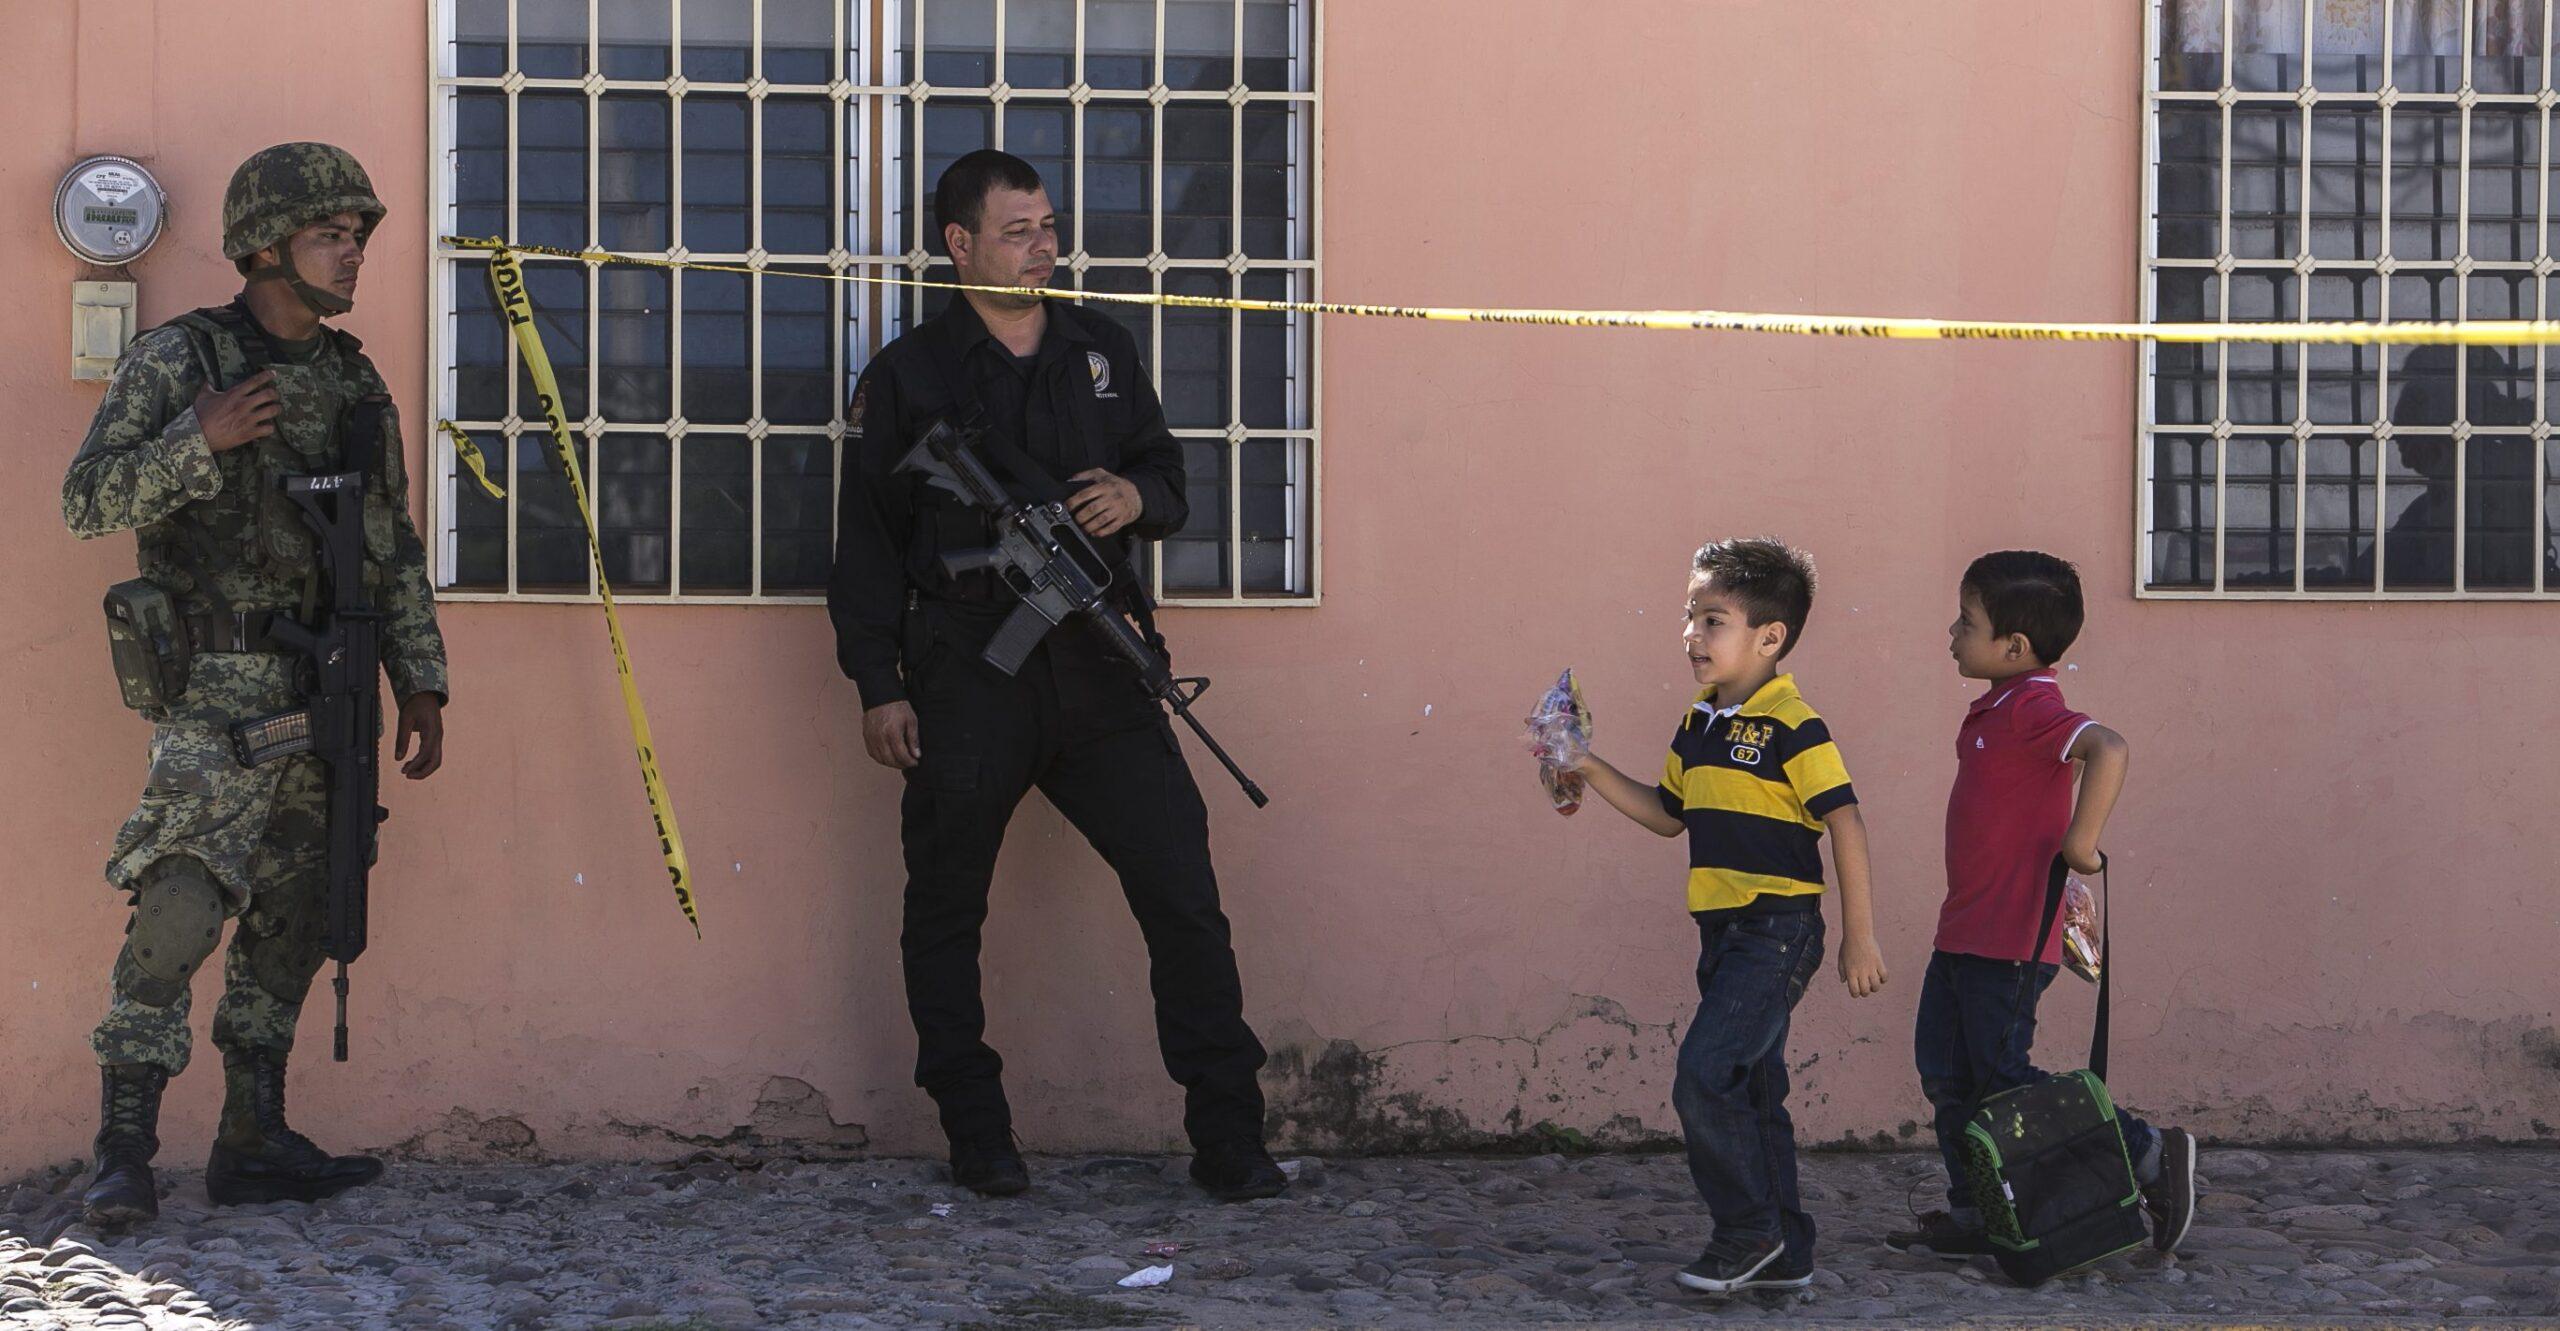 Homicidios de niños crecieron 285% en diez años: Chihuahua y Zacatecas, los estados con más casos